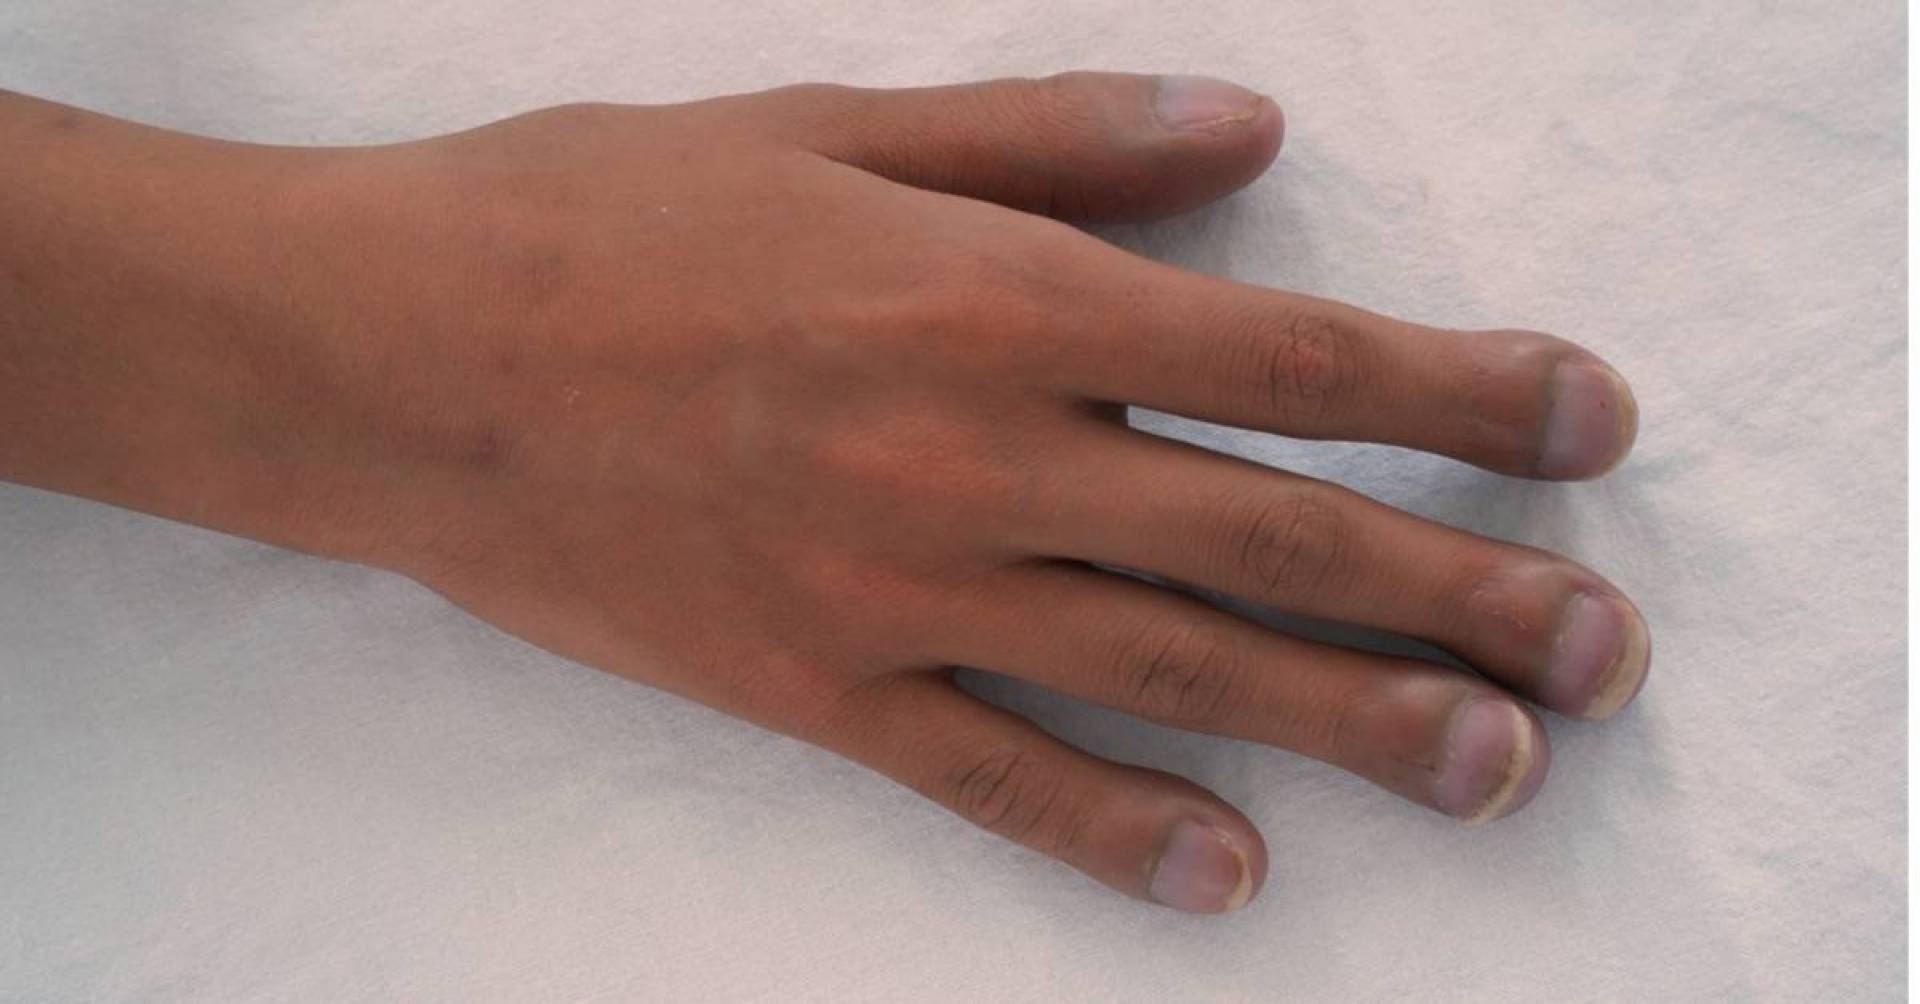 تعجر الأصابع مؤشر على احتمالية الإصابة بسرطان الرئة ..إليك التفاصيل